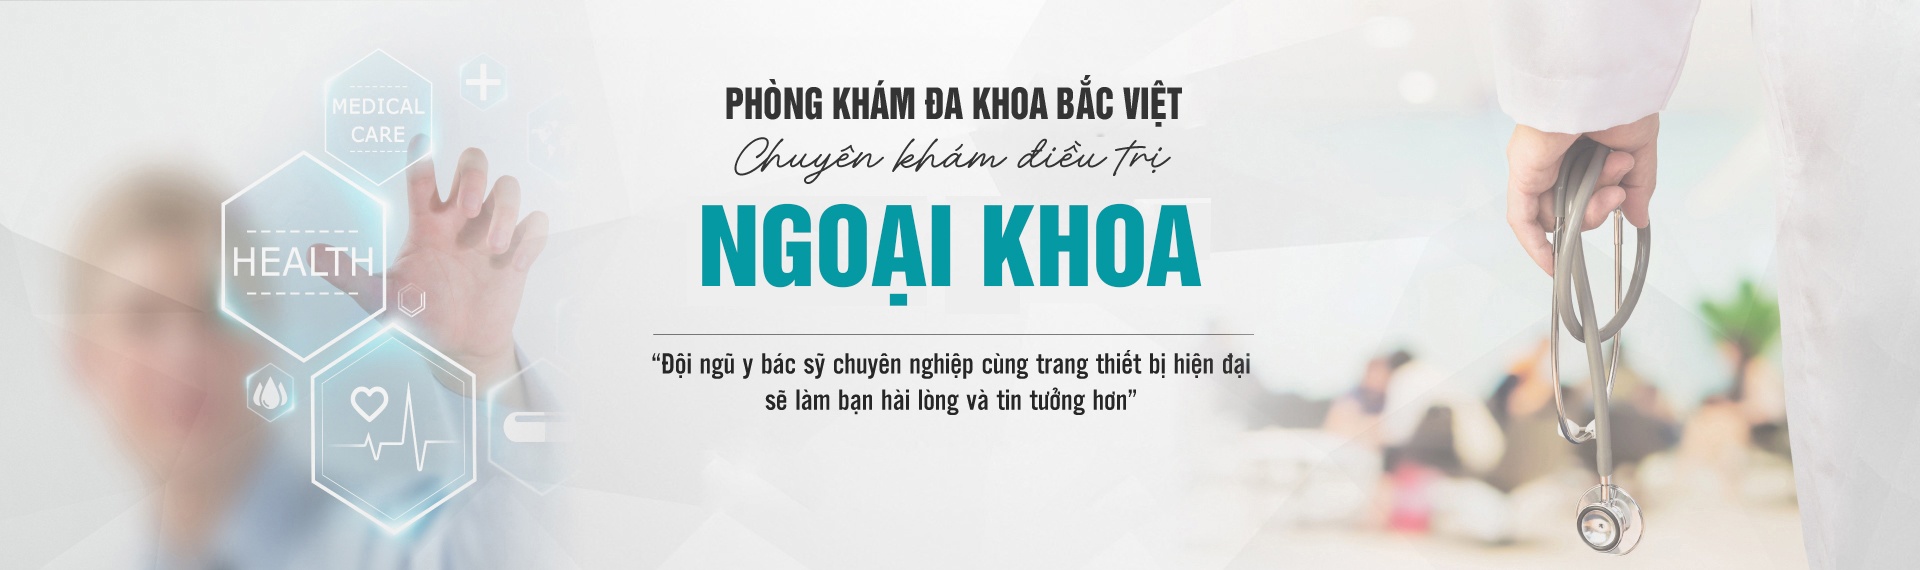 review-phong-kham-bac-viet-co-tot-khong